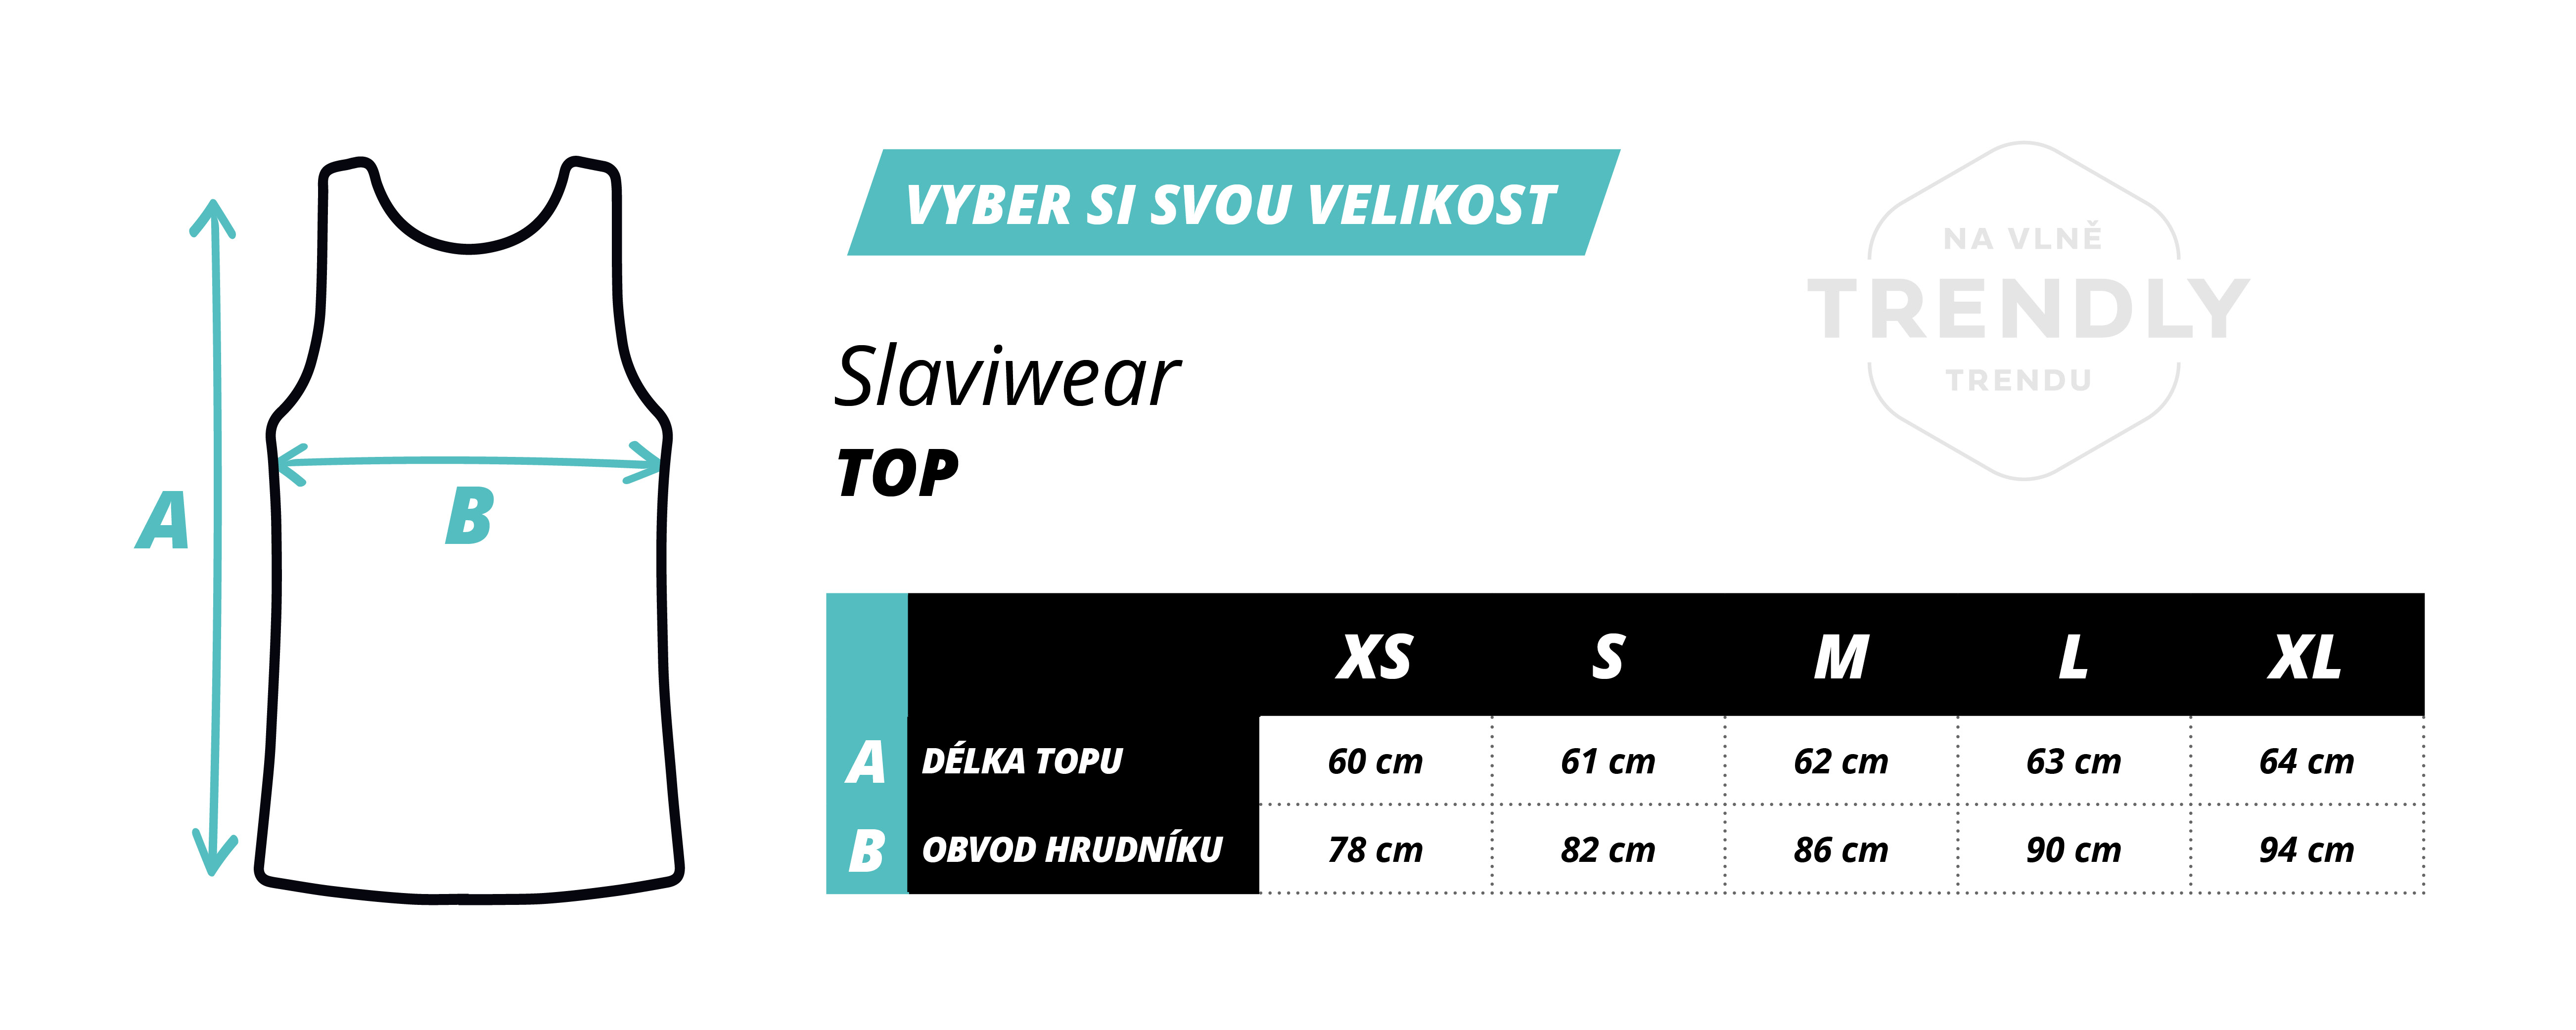 trendly_velikosti_top_slaviwear